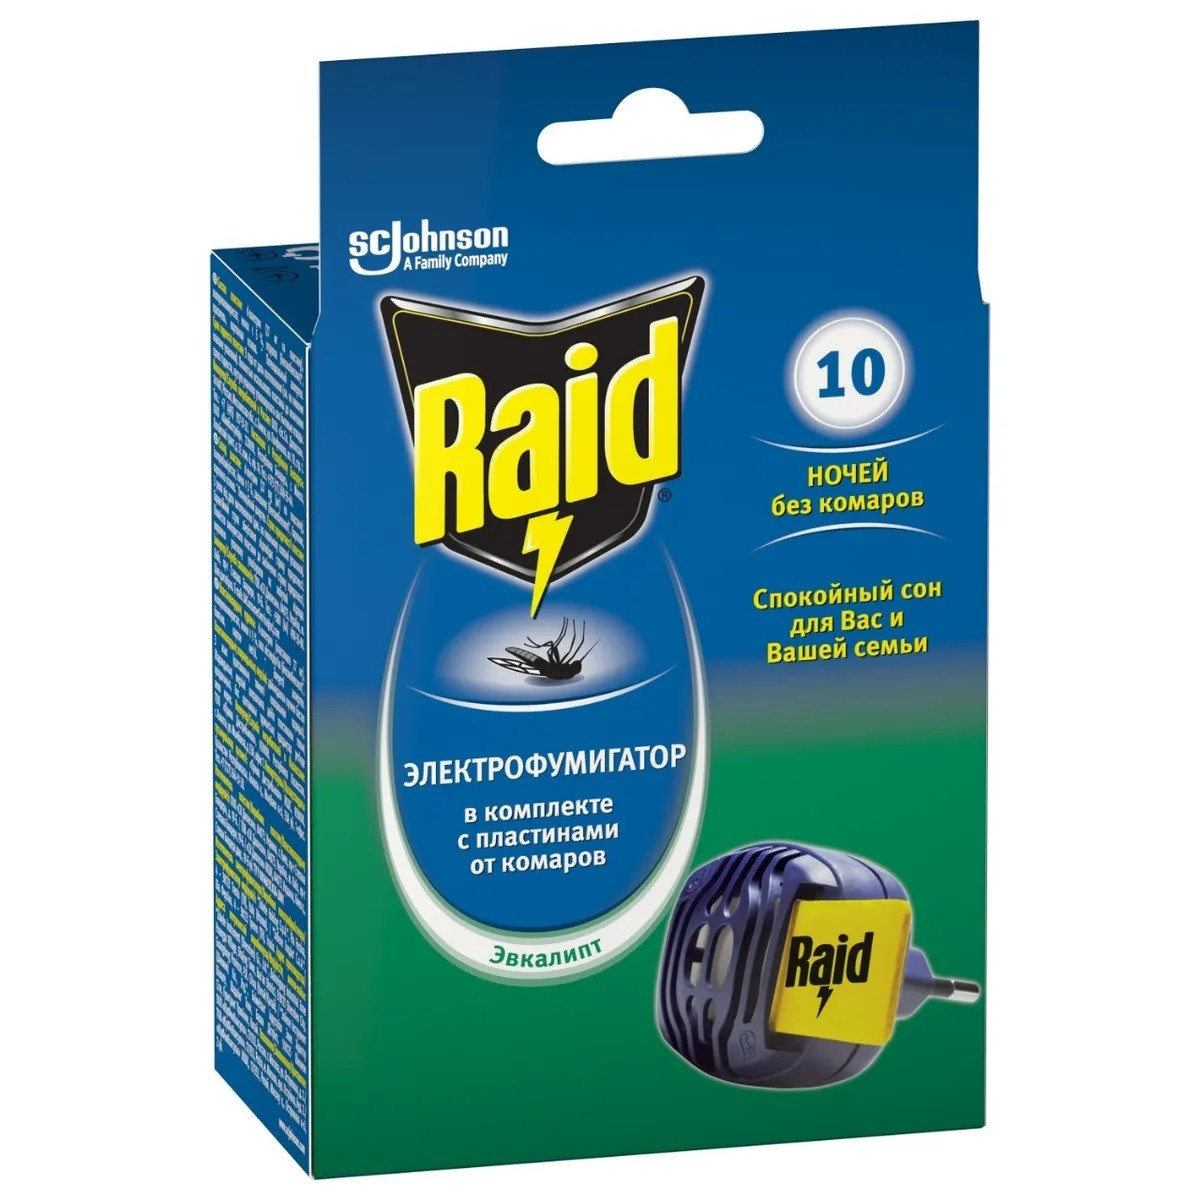 Raid комплект электрофумигатор + жидкость от комаров 30 ночей